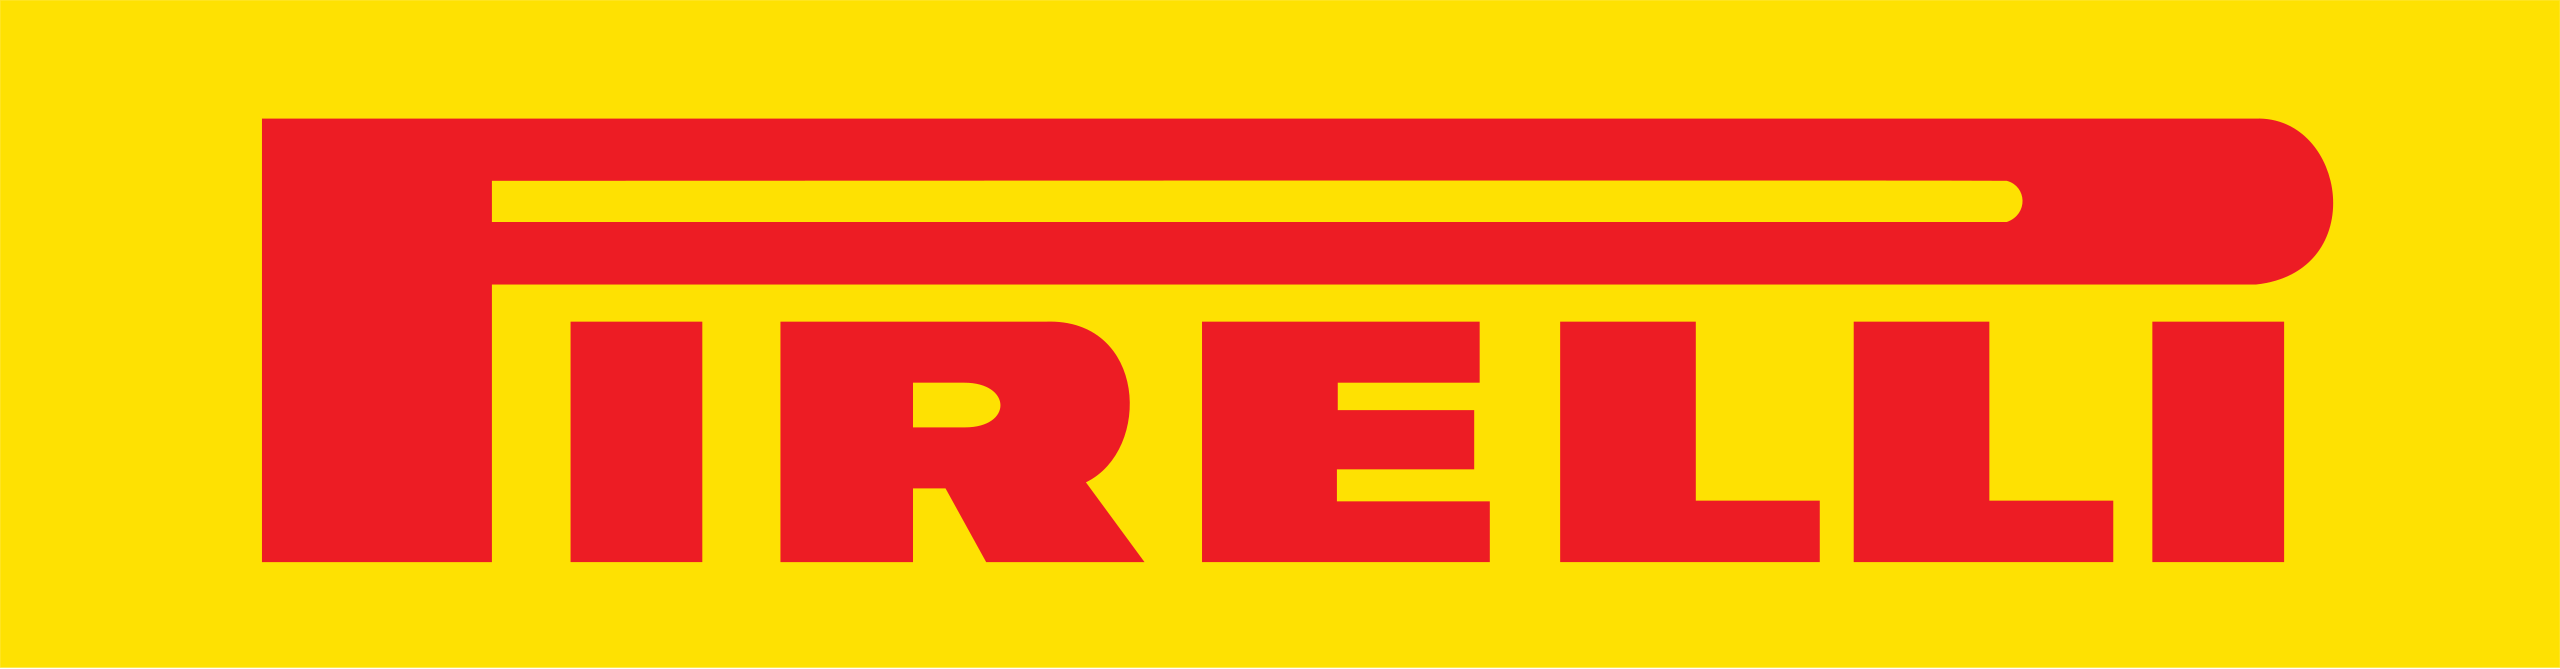 Logo Pirelli svg